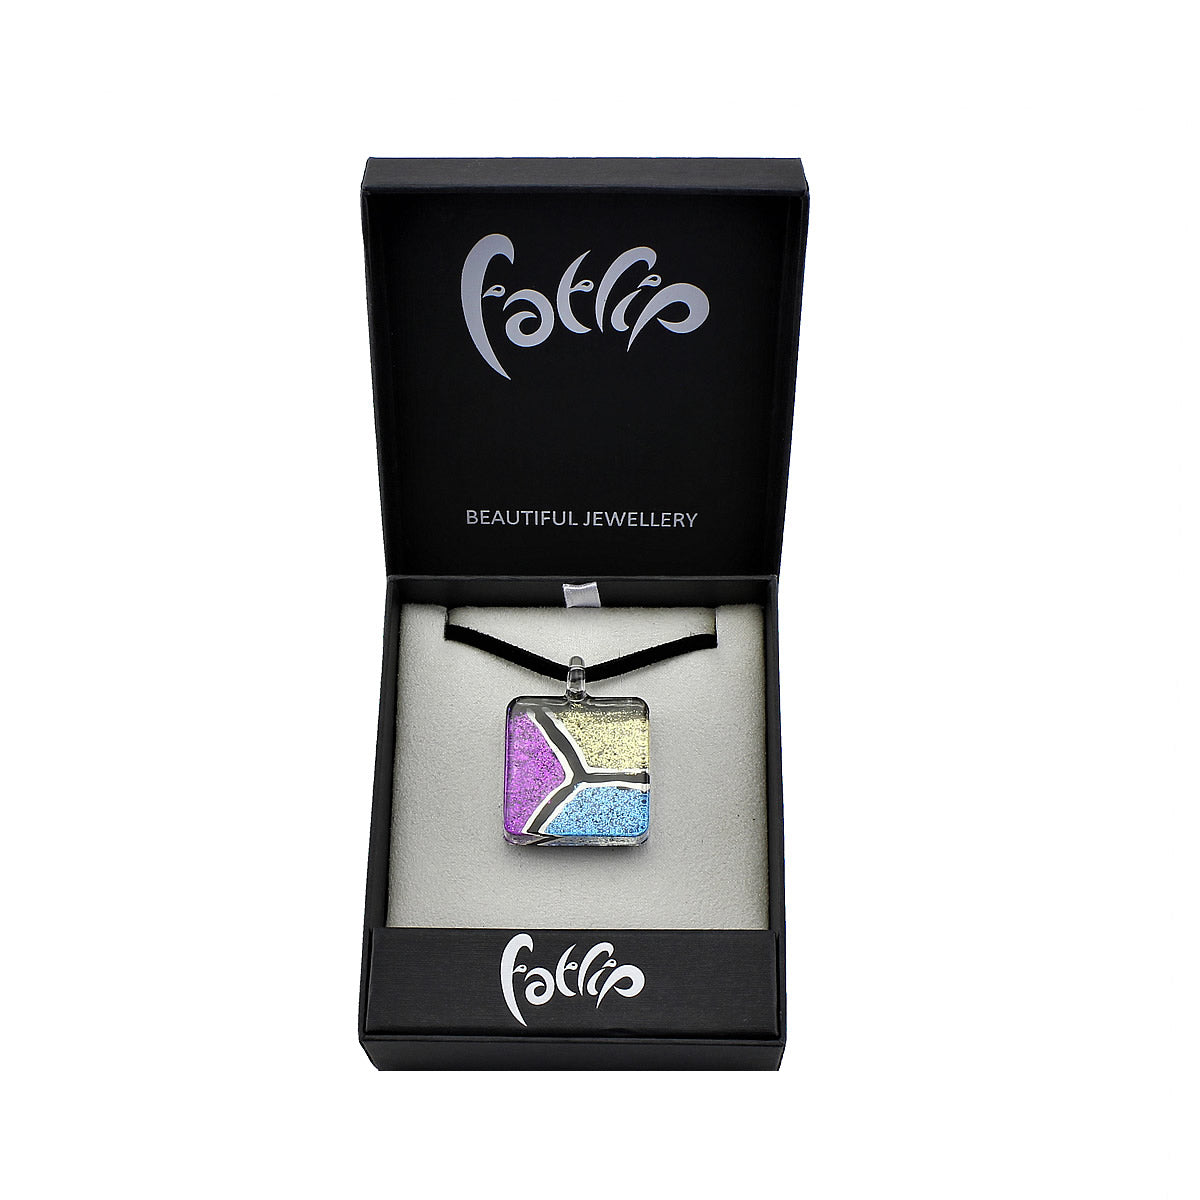 SWN535 - Purple Blue Gold Glass Square Glitter Pendant Necklace